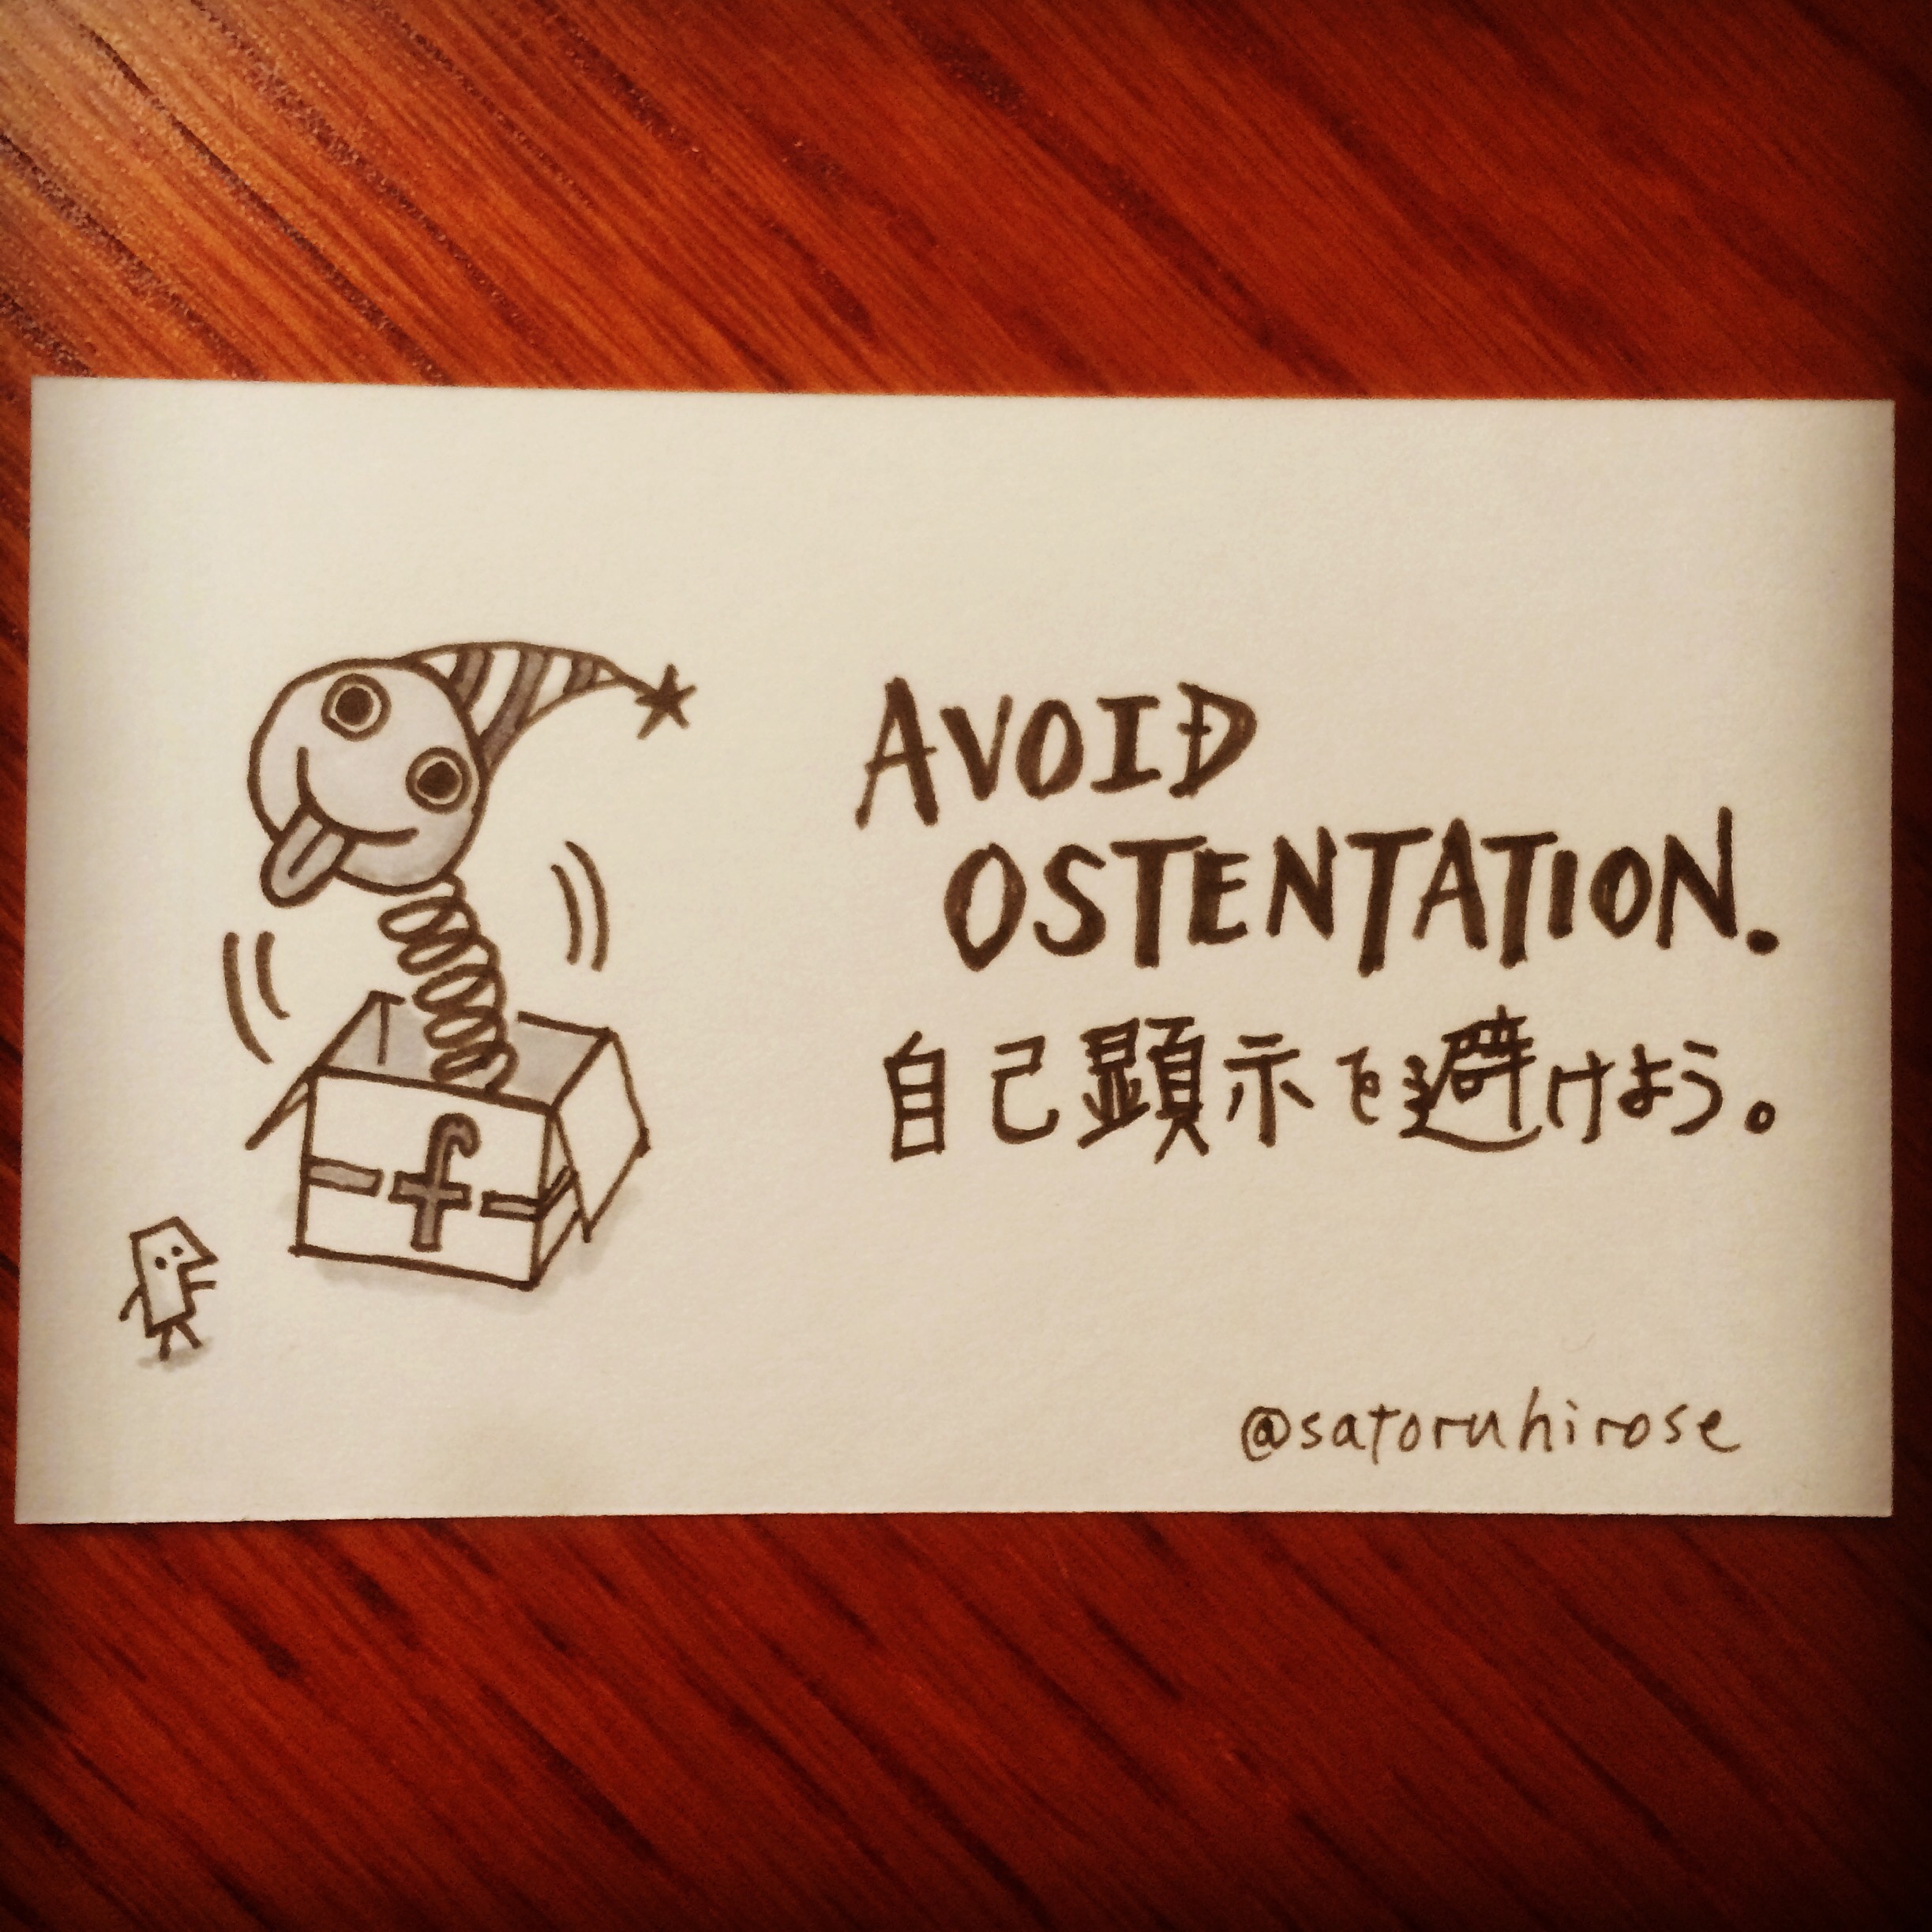 Avoid ostentation.